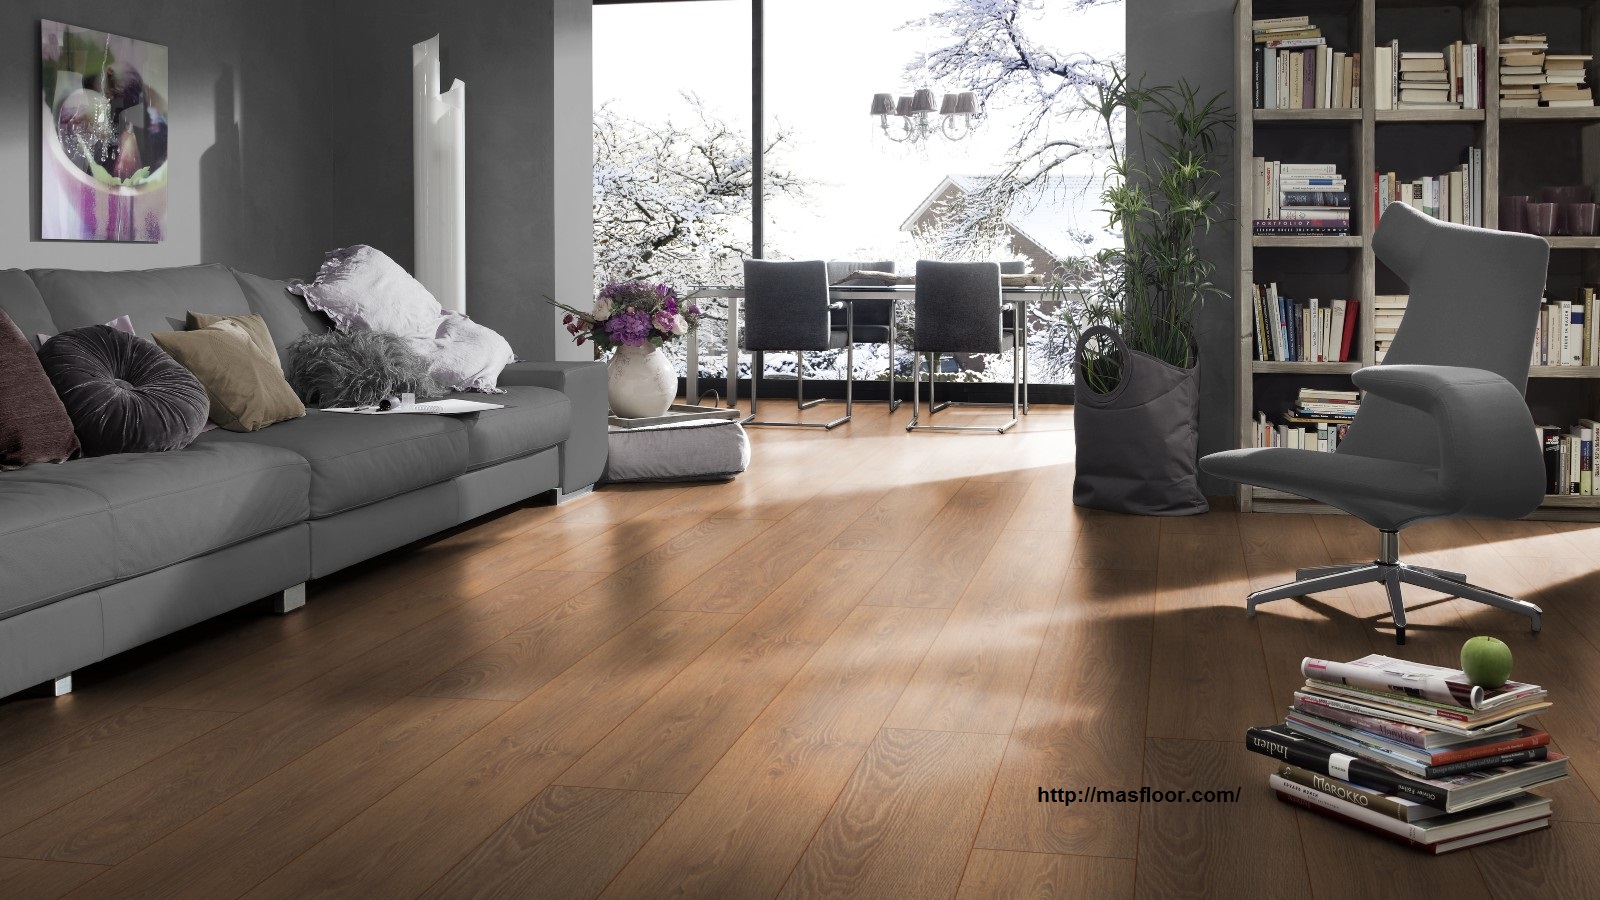 Sàn gỗ cao cấp có màu sắc tự nhiên, bắt mắt đó chính là lí do mà rất nhiều người lựa chọn sàn gỗ là vật liệu lát sàn